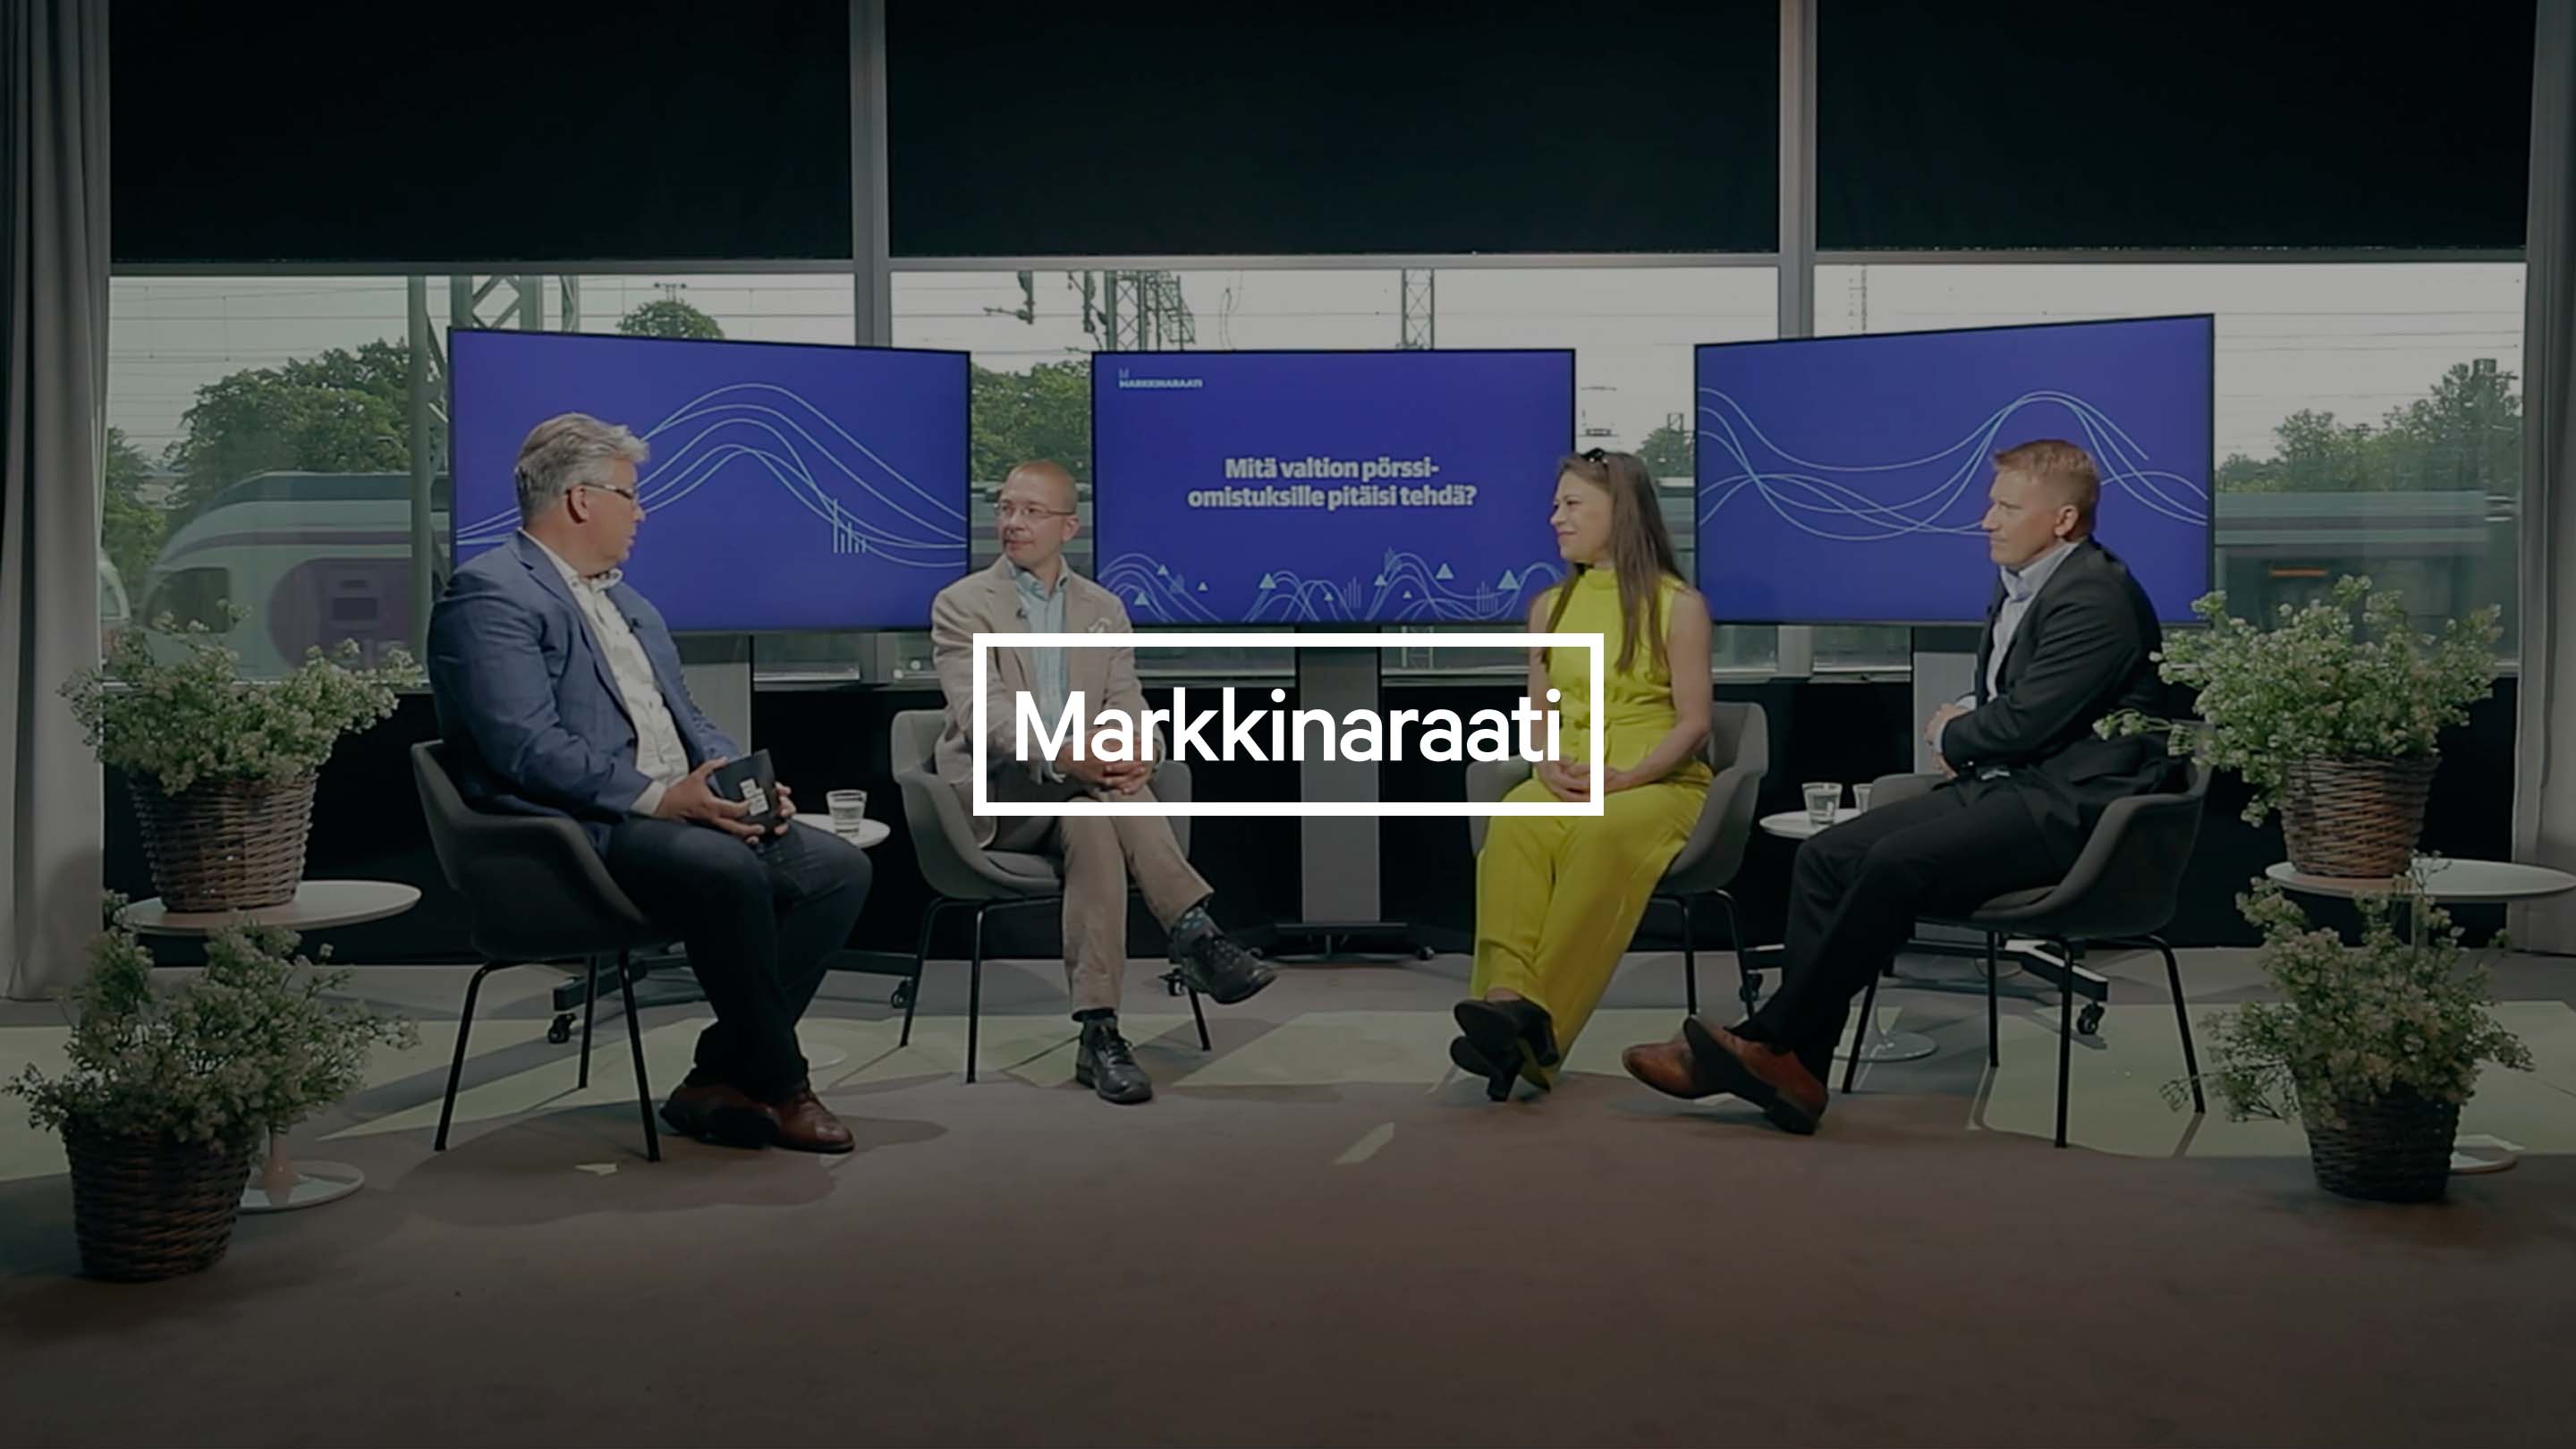 Markkinaraati: Aktieplacerare måste få semestra i lugn och ro